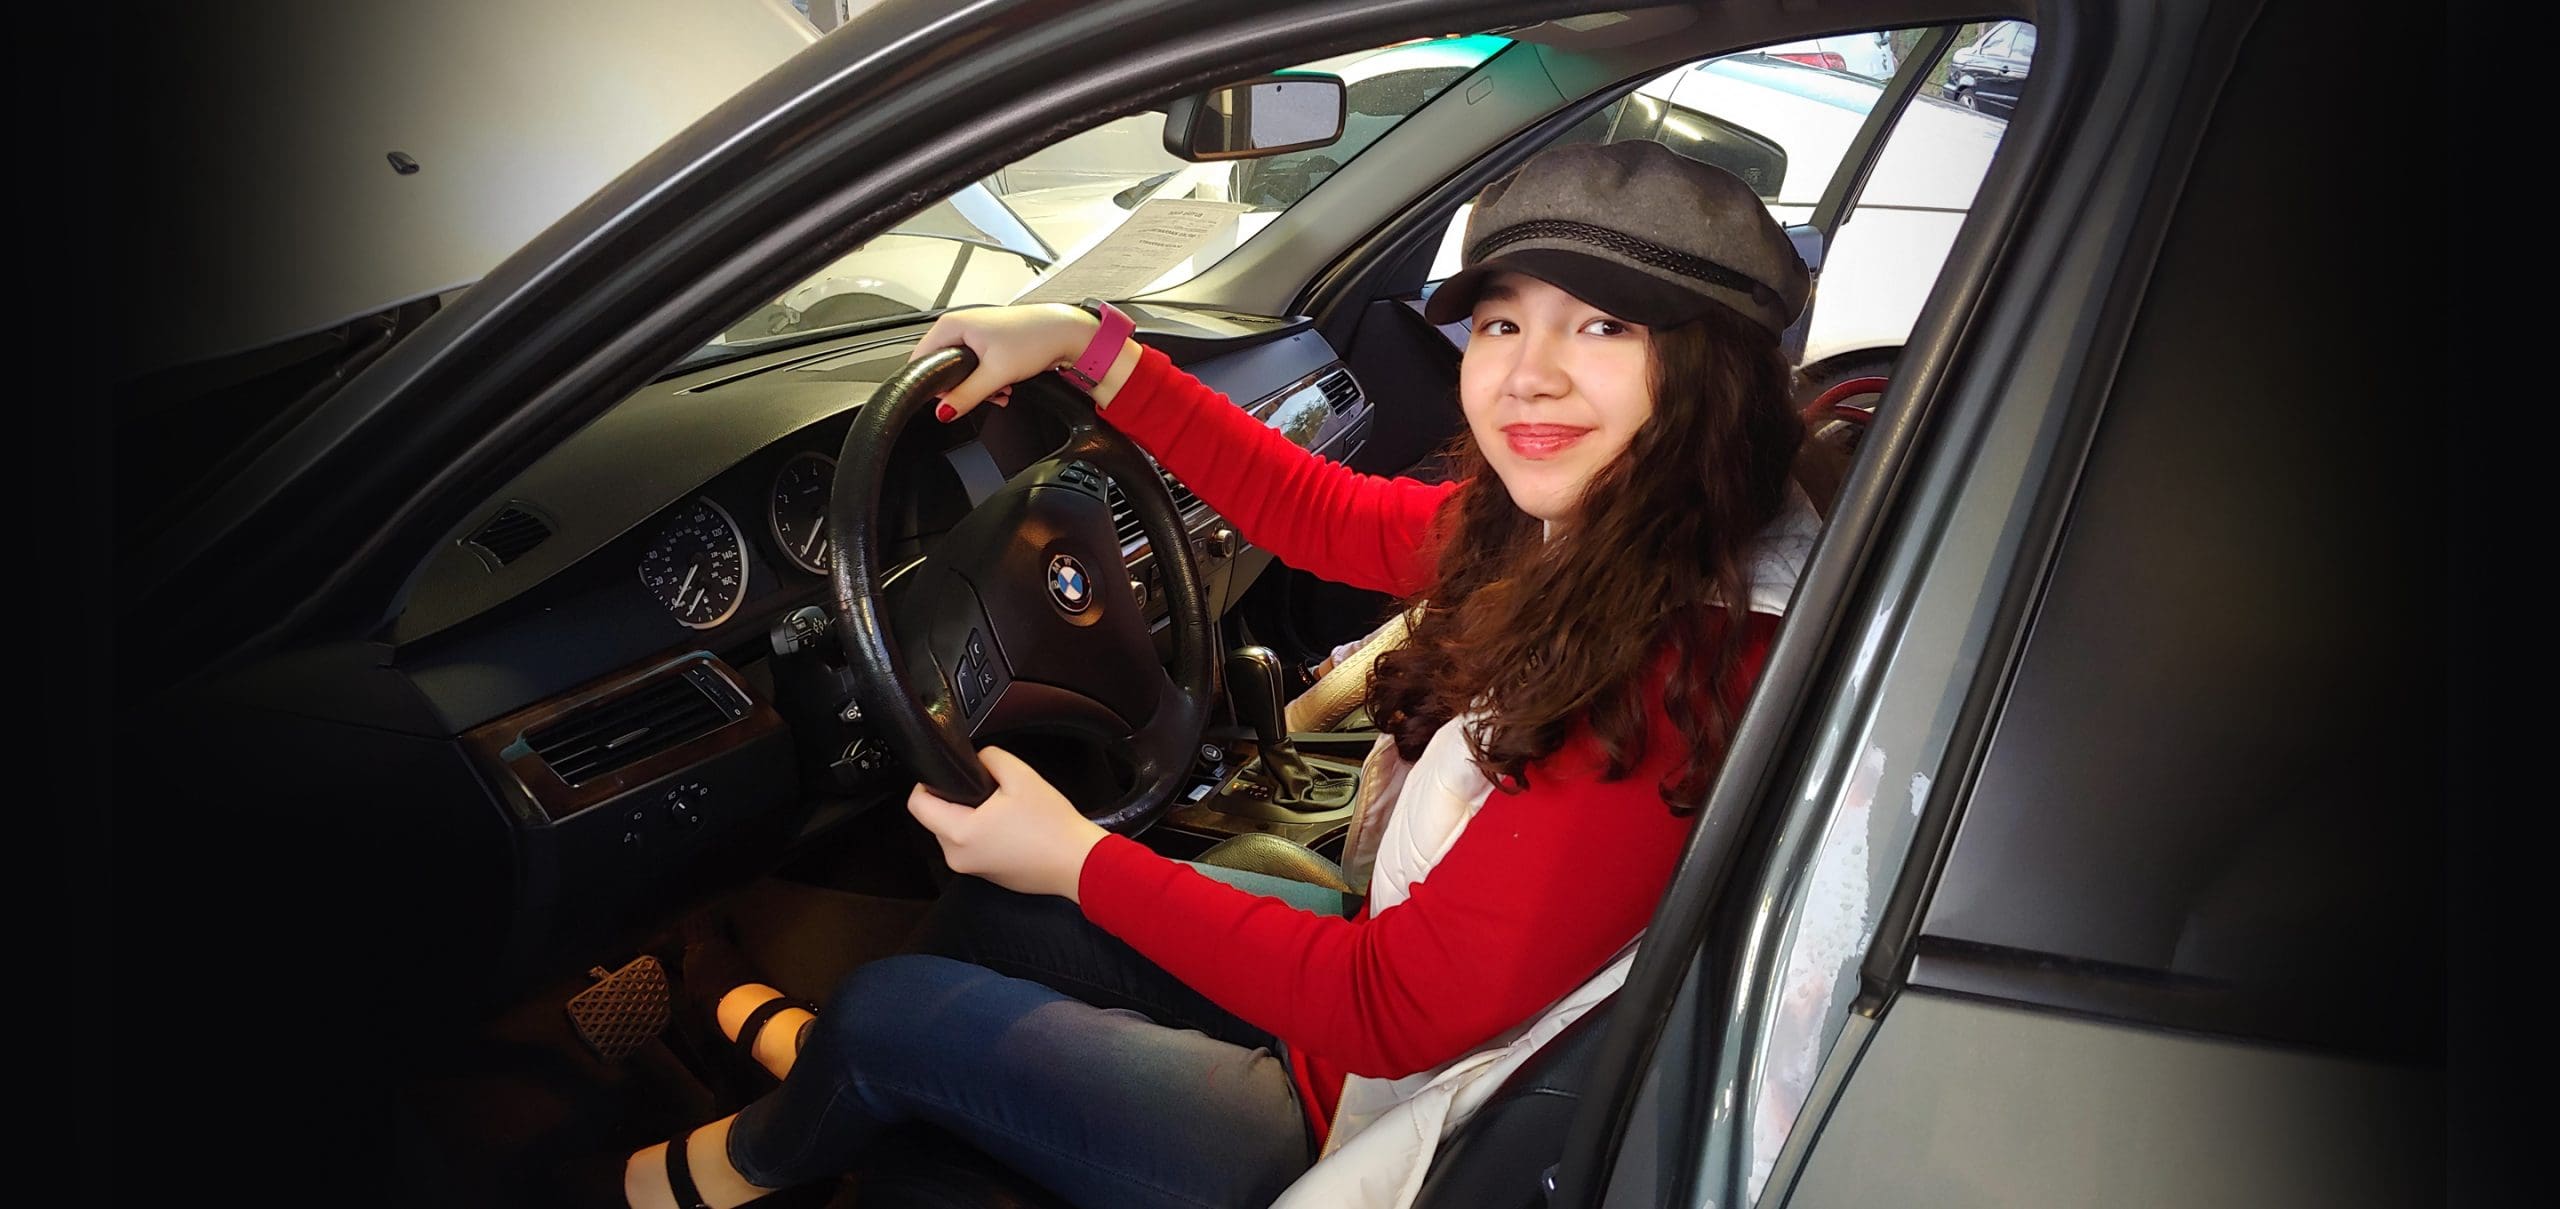 Woman behind car steering wheel